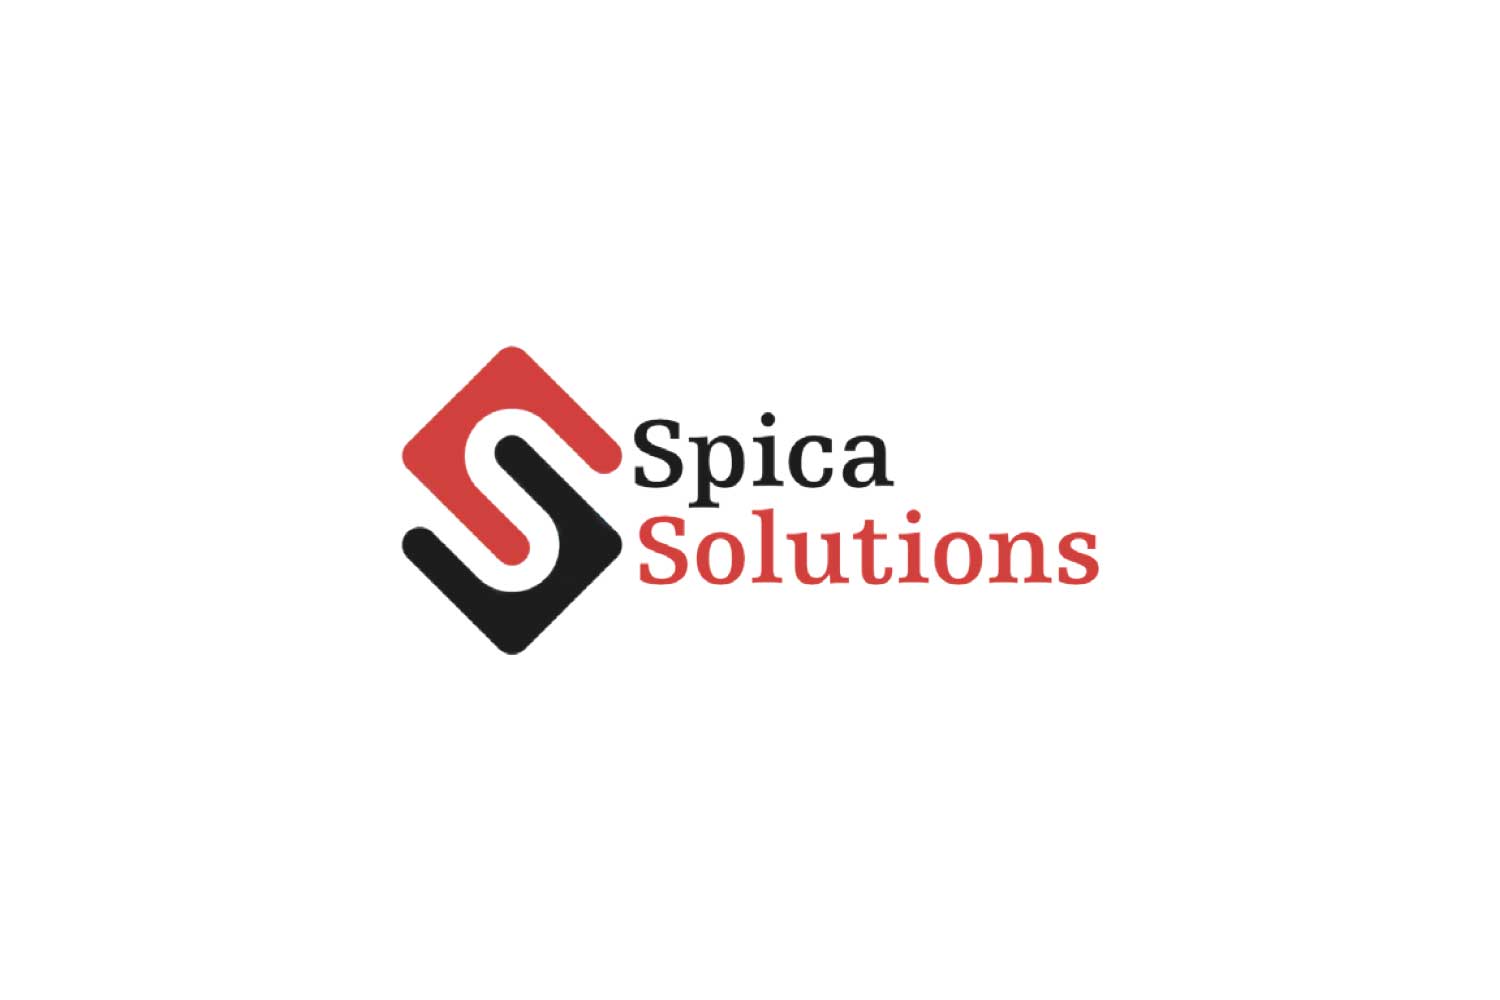 Spica Solutions logo stare